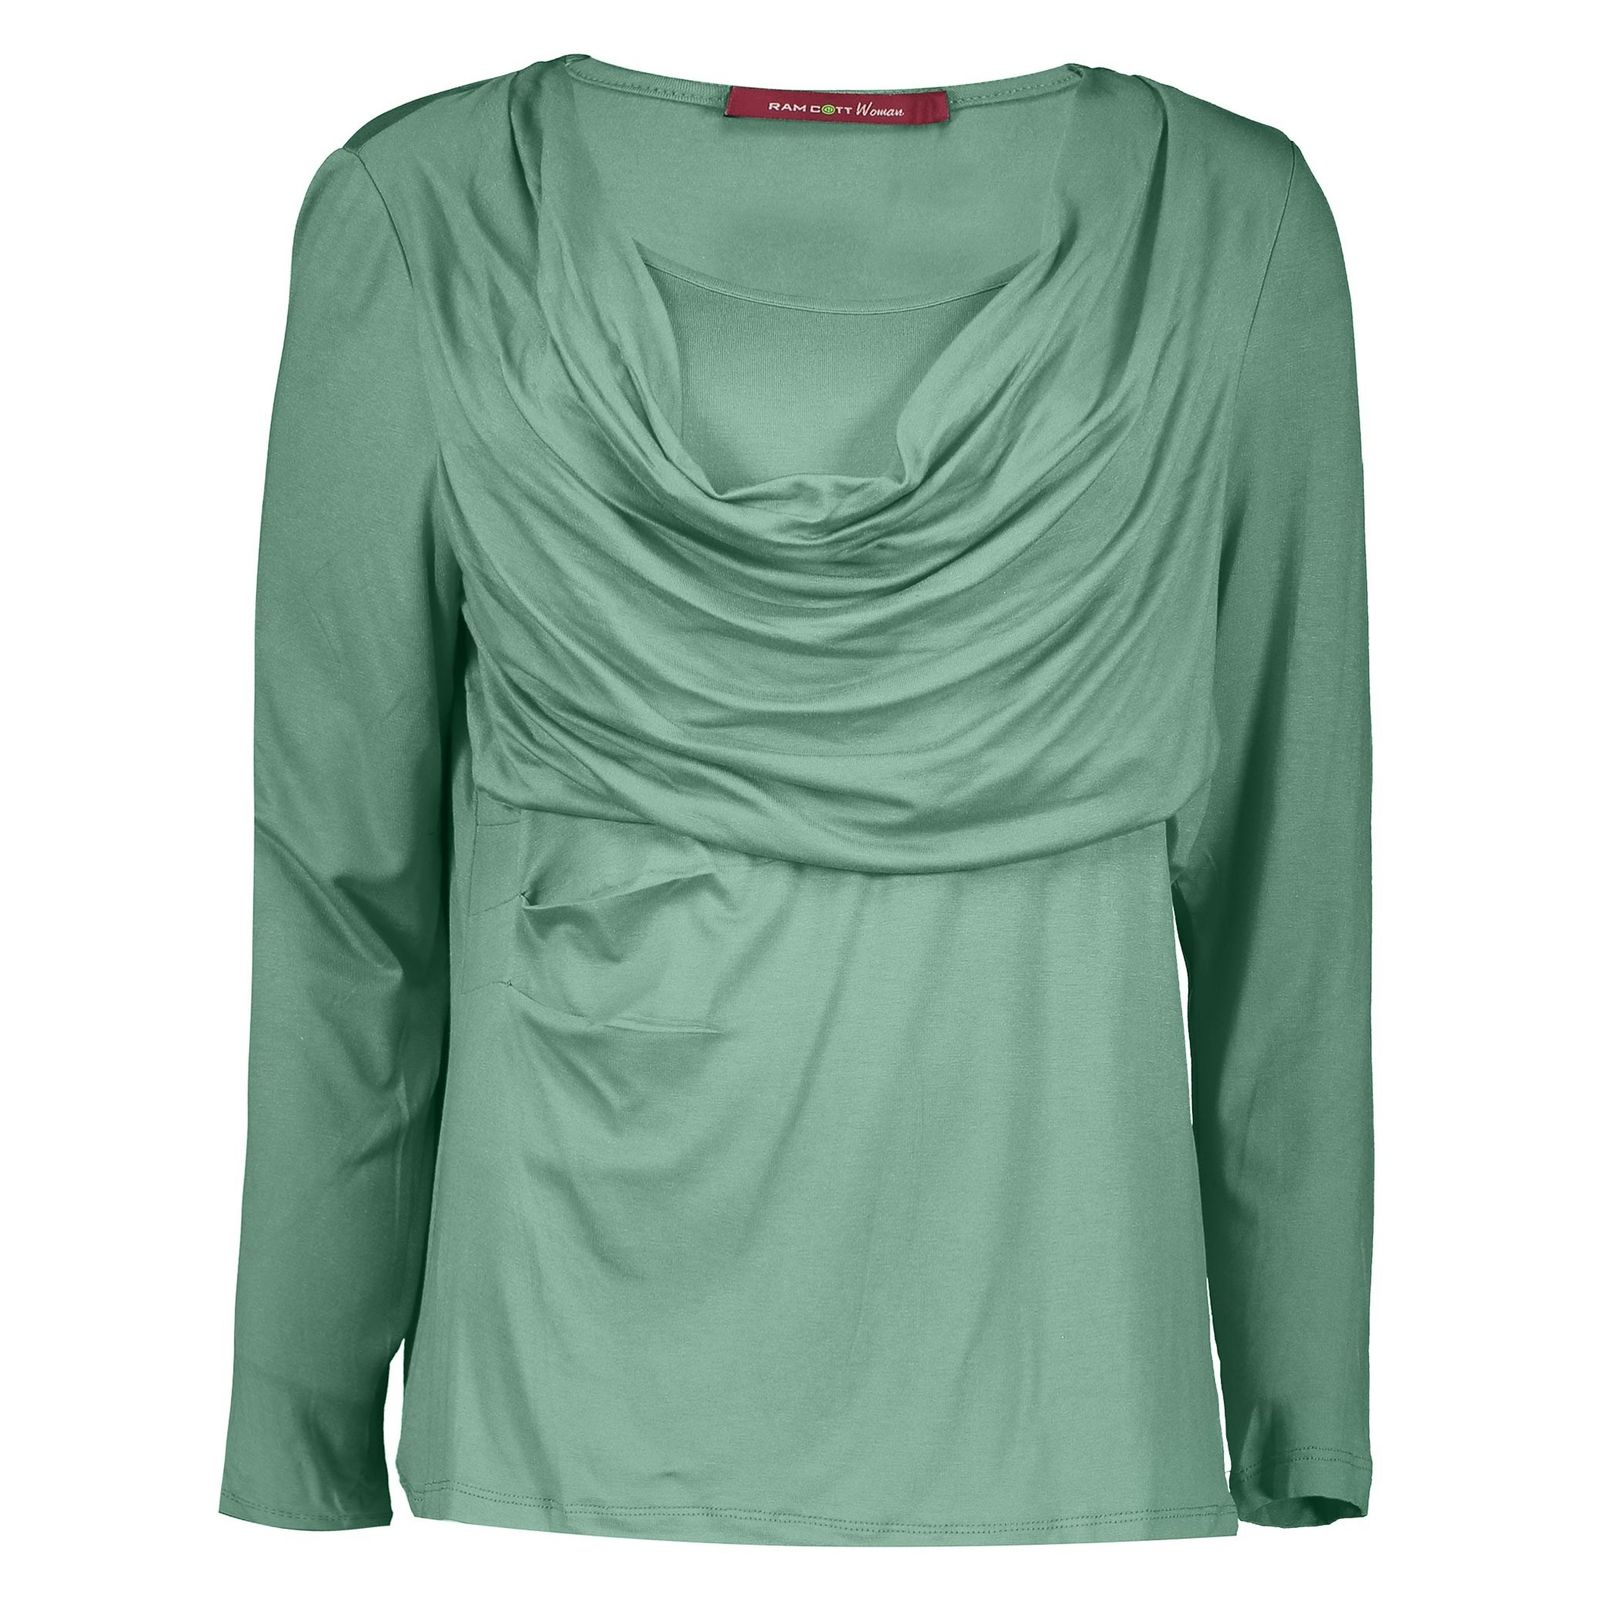 تی شرت آستین بلند زنانه - رامکات - سبز روشن - 2